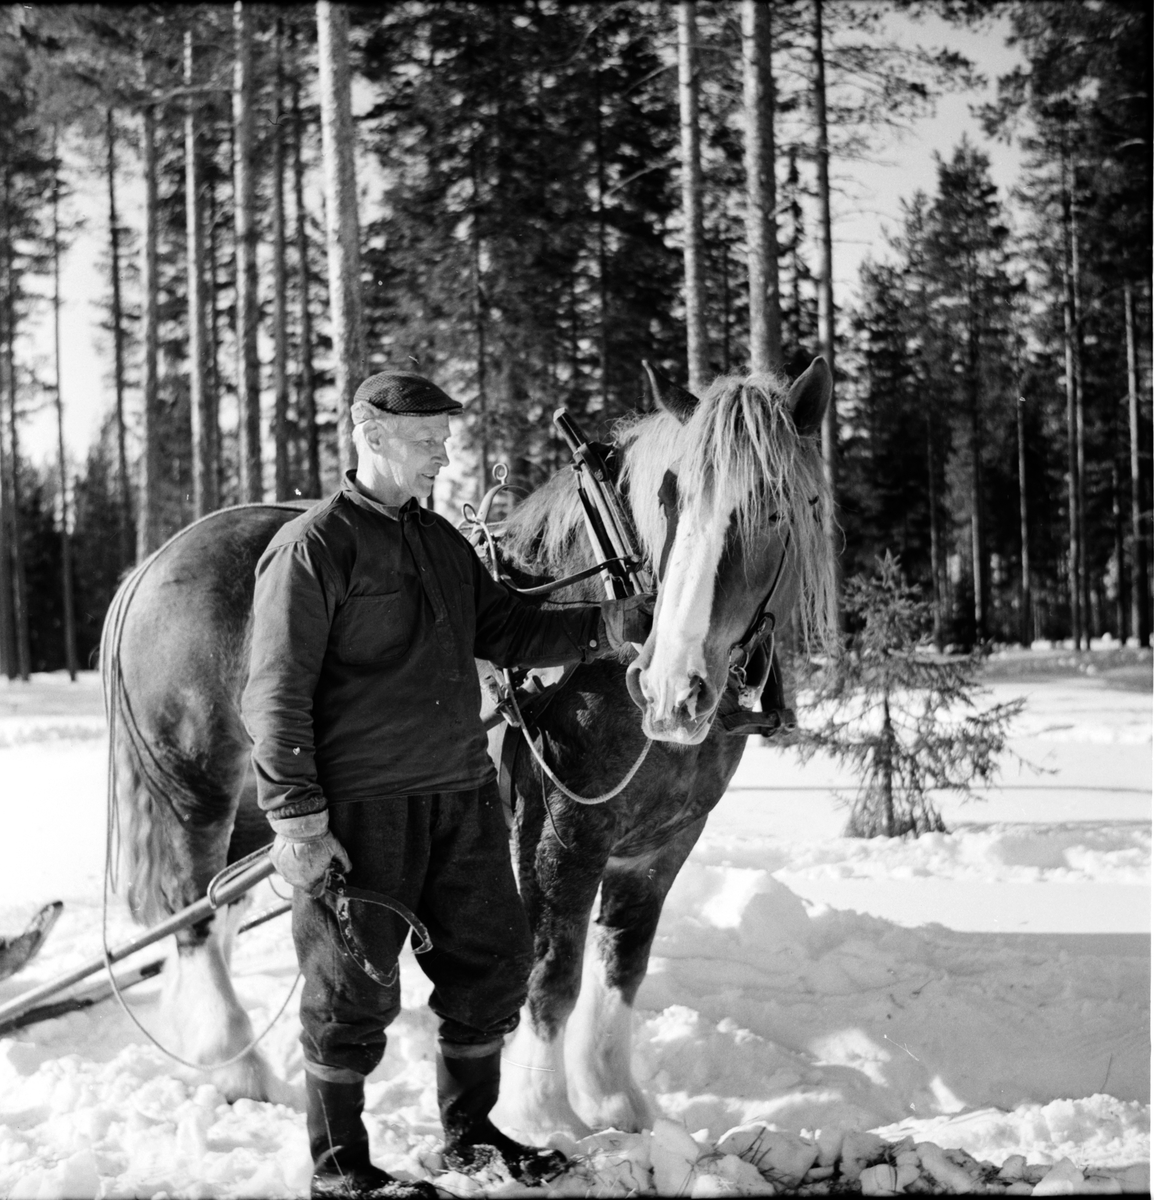 Arbrå,
Hästen behövs i skogen,
Bosjön,
Mars 1969